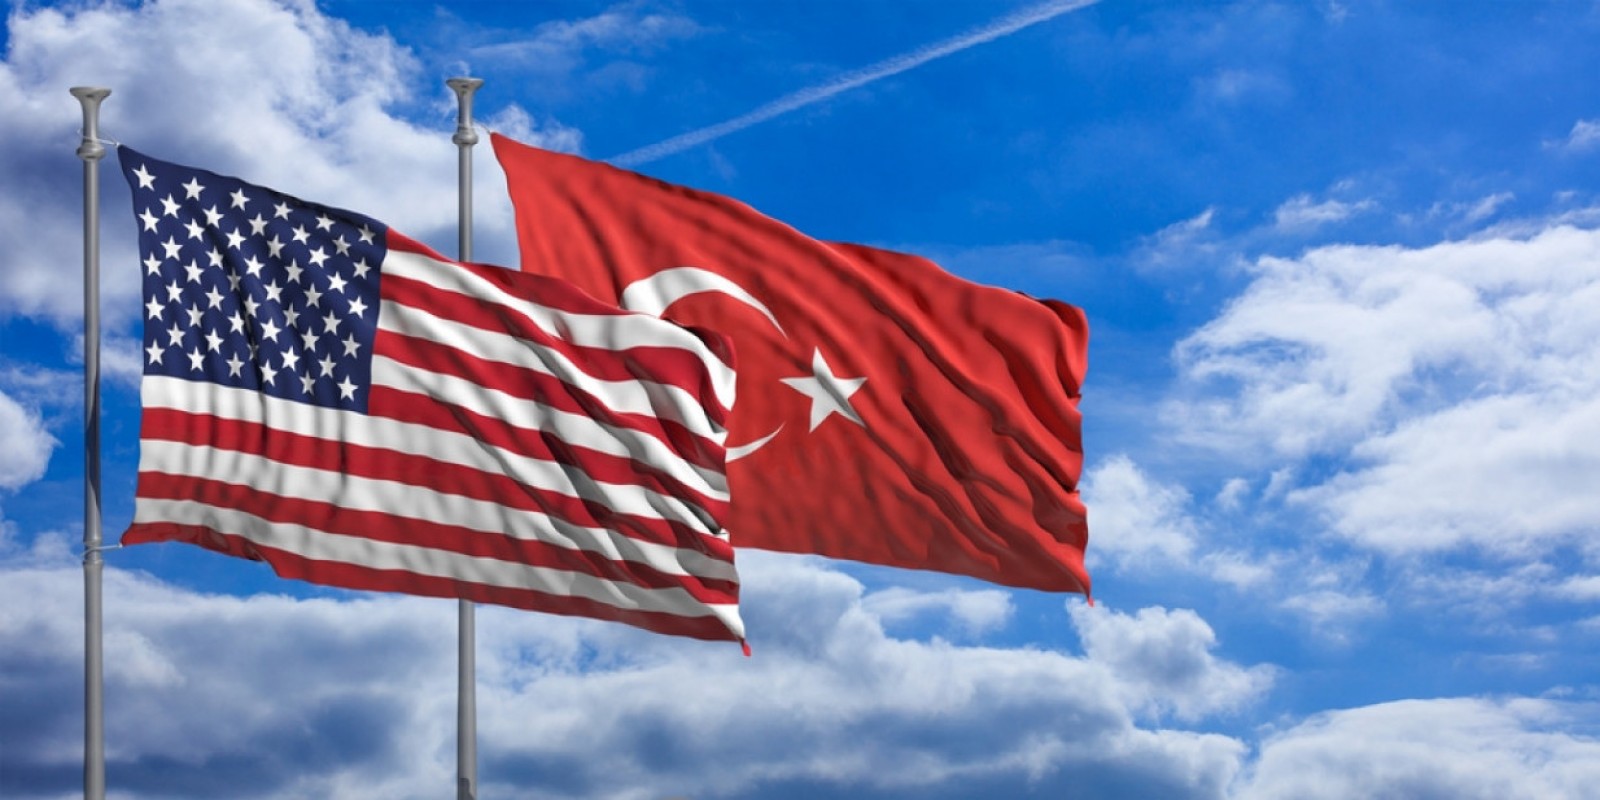 ΗΠΑ και Τουρκία συμφώνησαν  στην πρώτη φάση της δημιουργίας της ζώνης ασφαλείας στη Συρία αλλά… με σημαντικές διαφορές